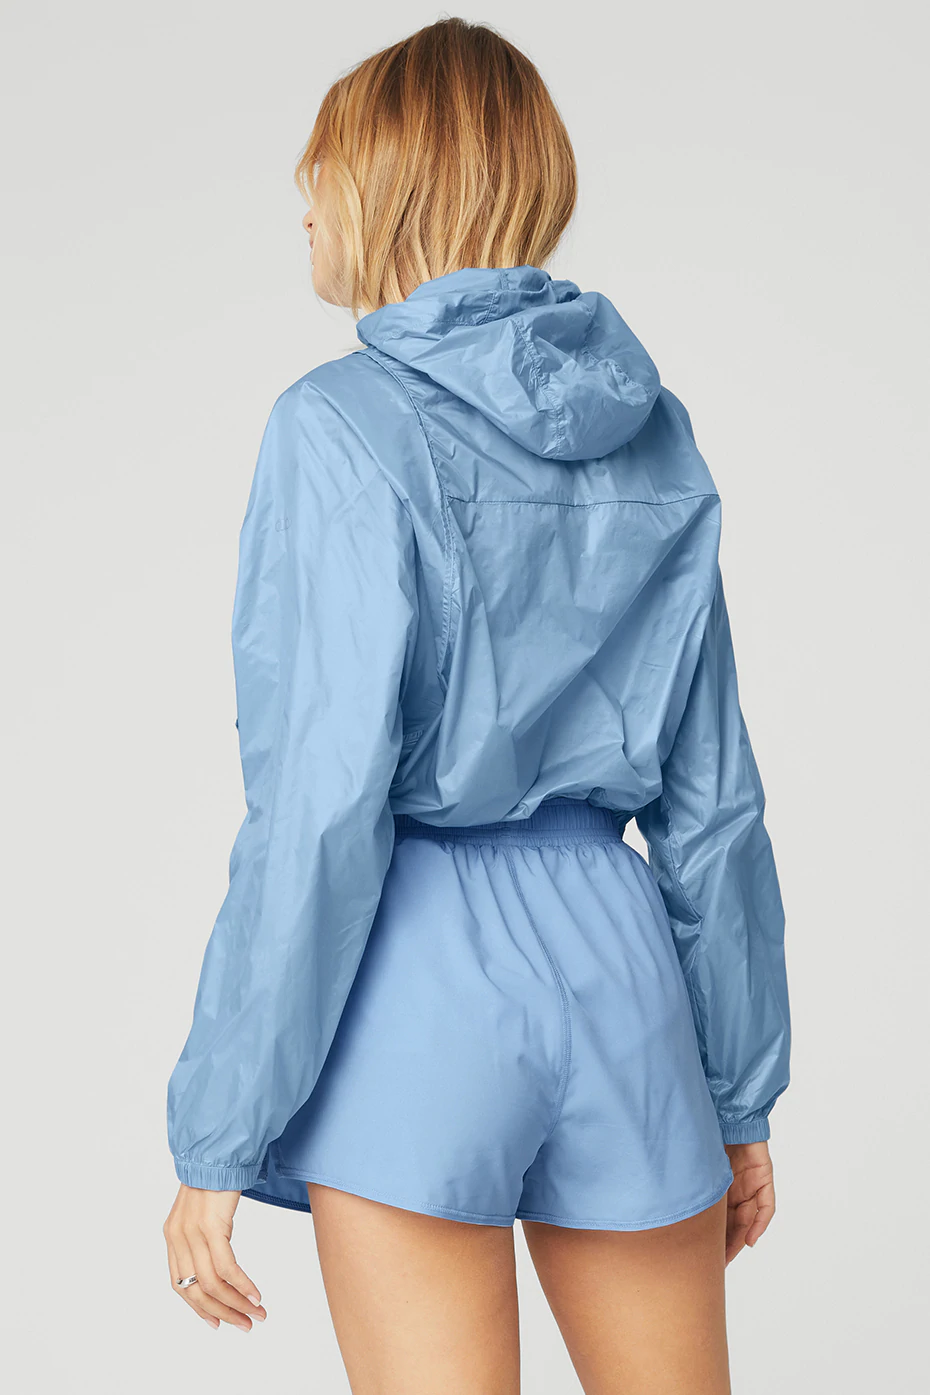 Alo Yoga Sprinter Jacket - Tile Blue - Koşucu Ceketi